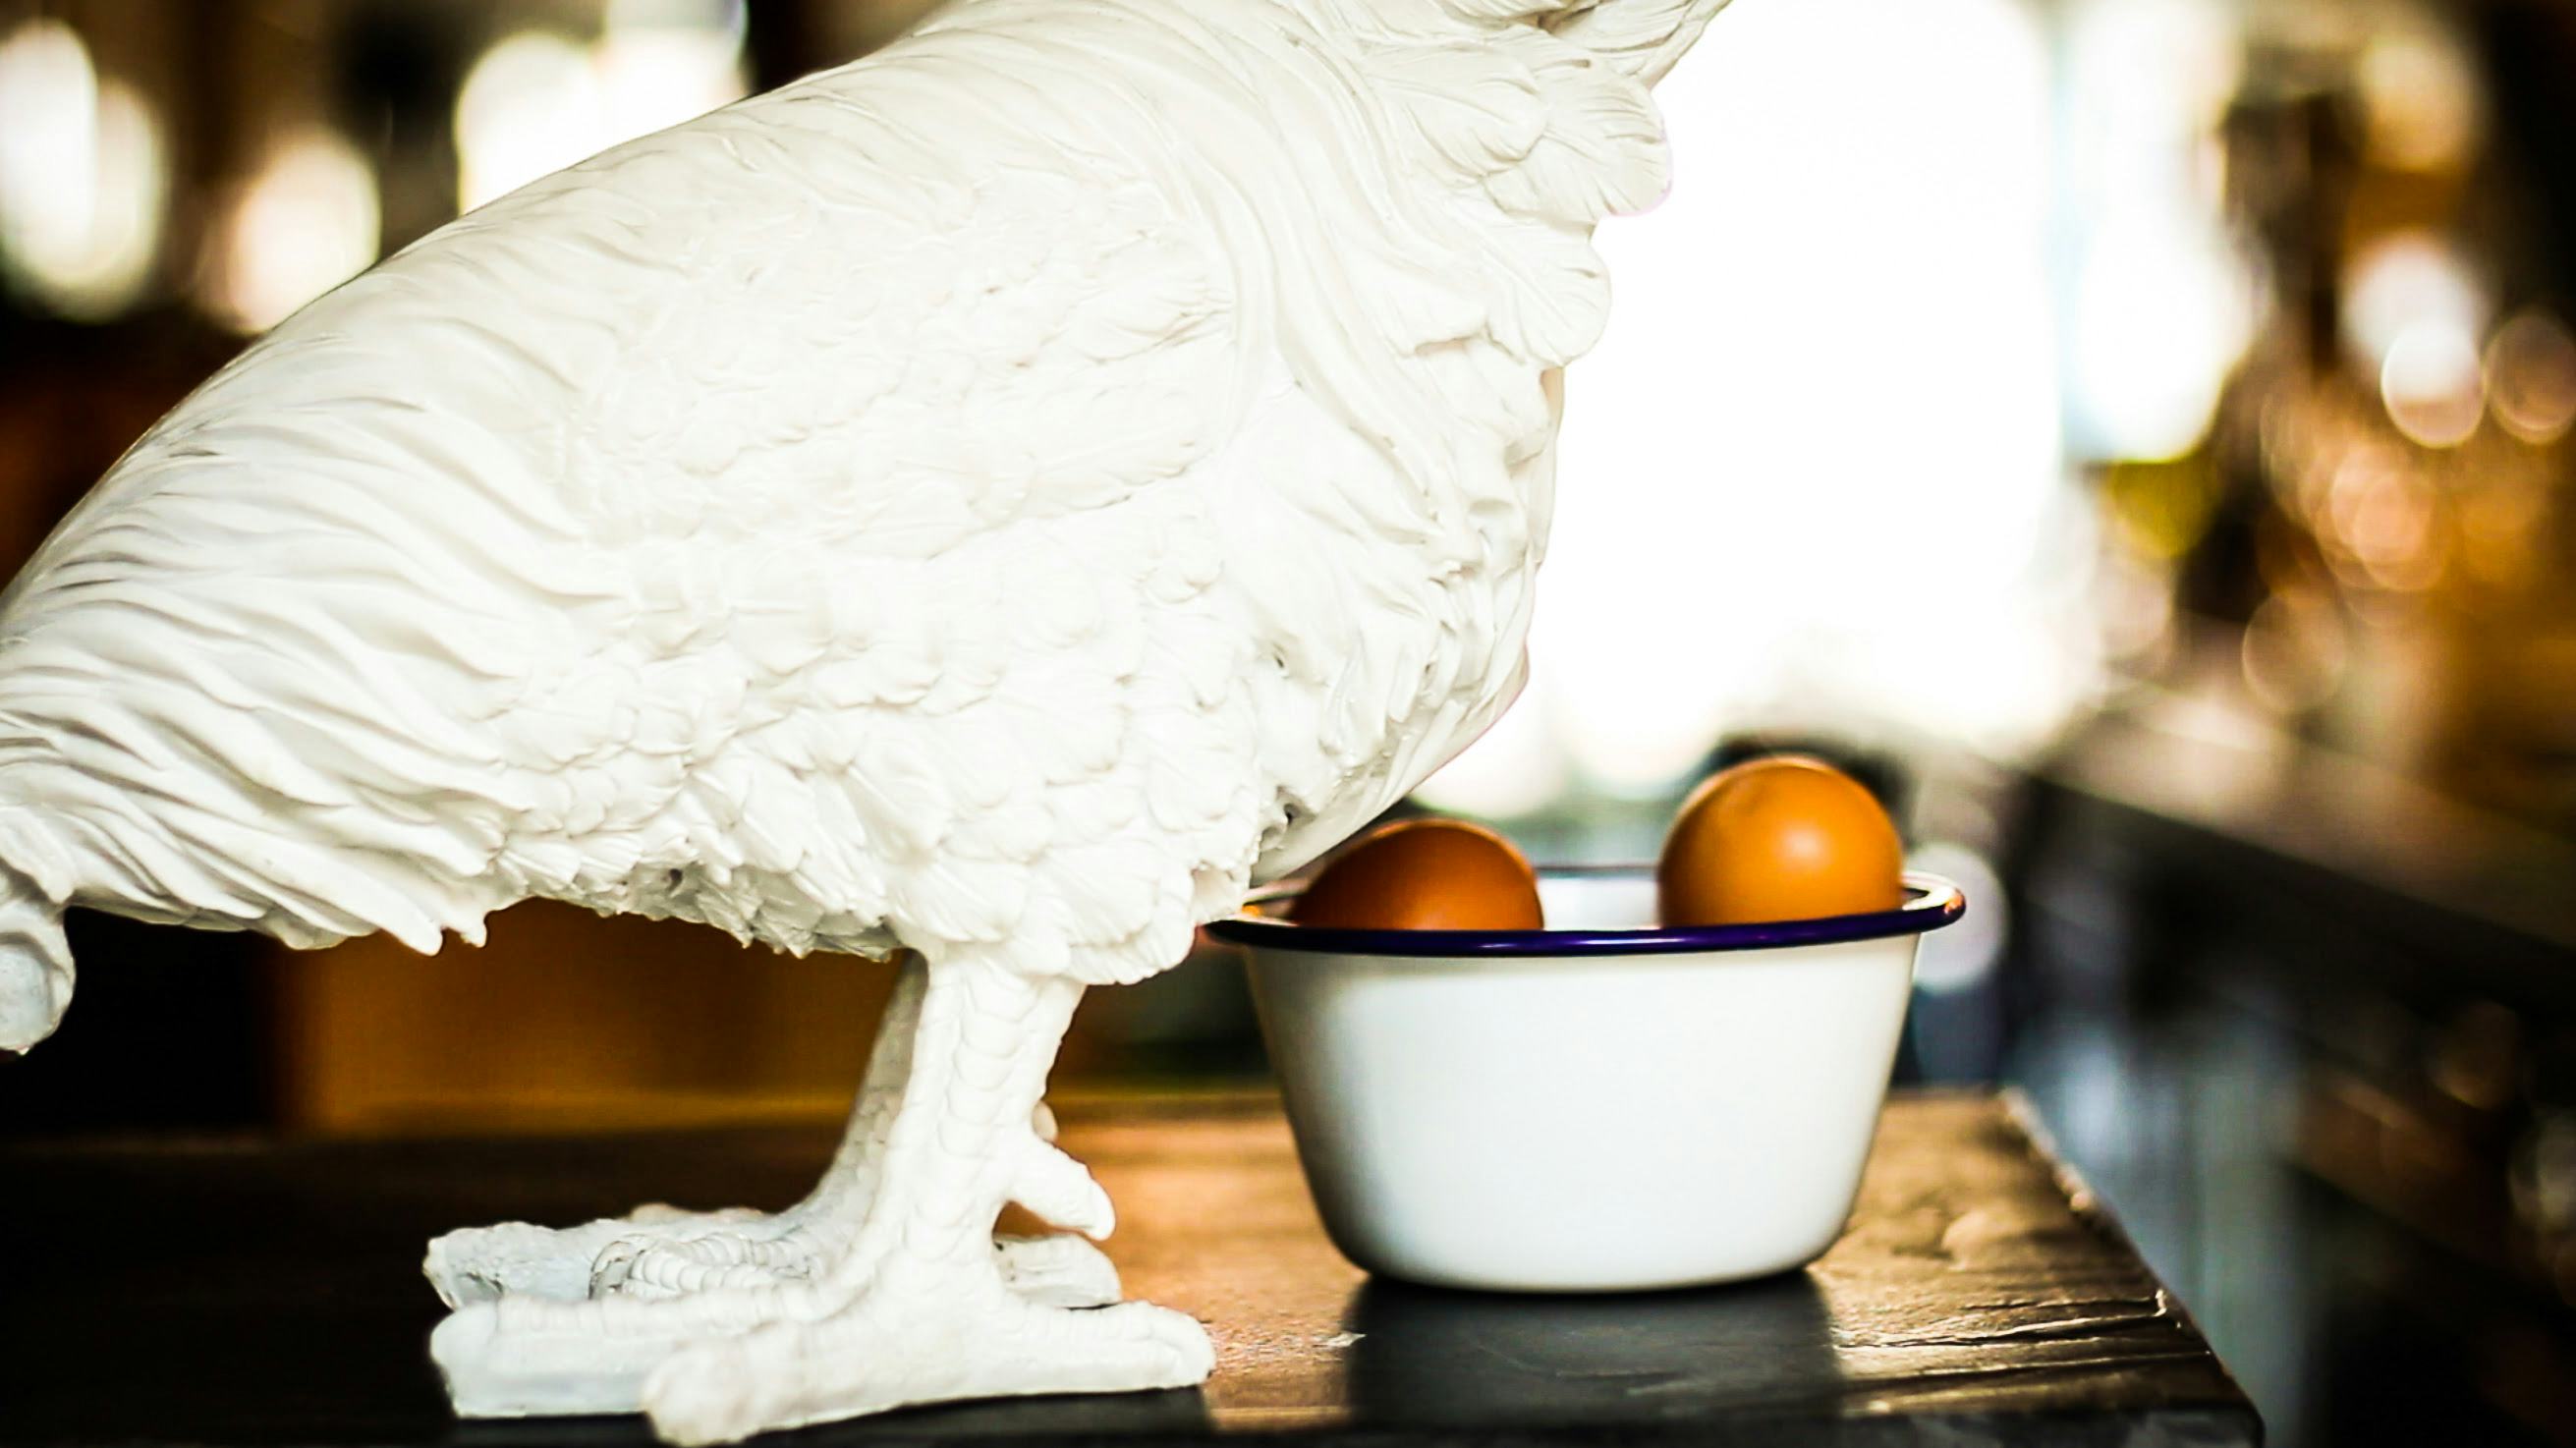 The Egg Store: Restaurant met ei in de hoofdrol